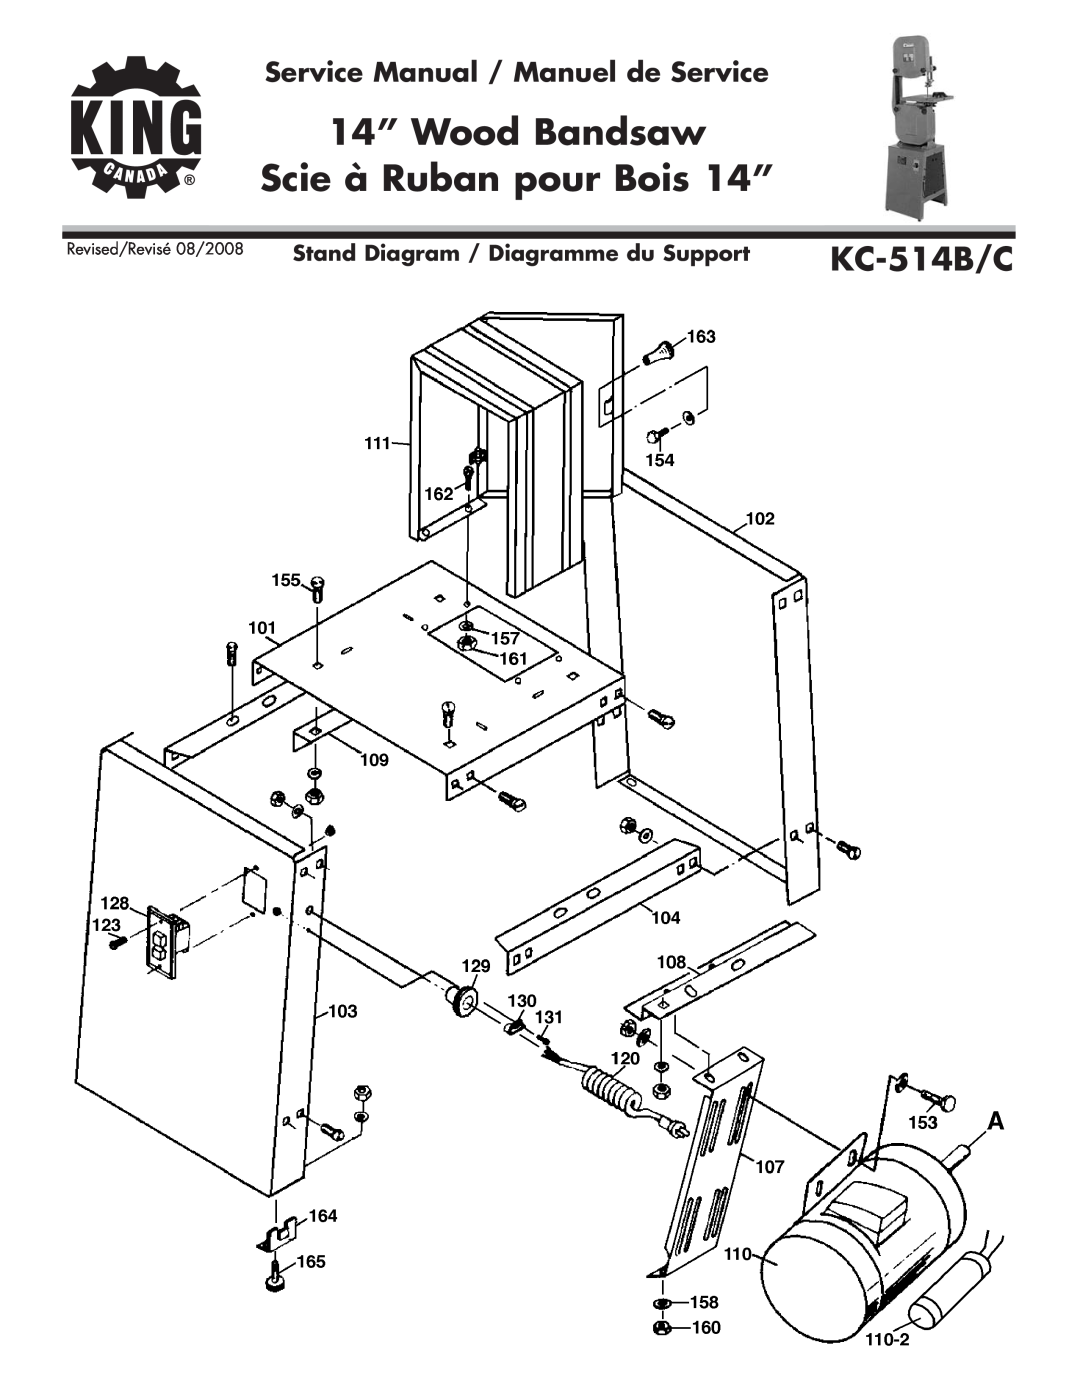 King Canada KC-514B-C Stand Diagram / Diagramme du Support, 14” Wood Bandsaw Scie à Ruban pour Bois 14”, KC-514B/C 